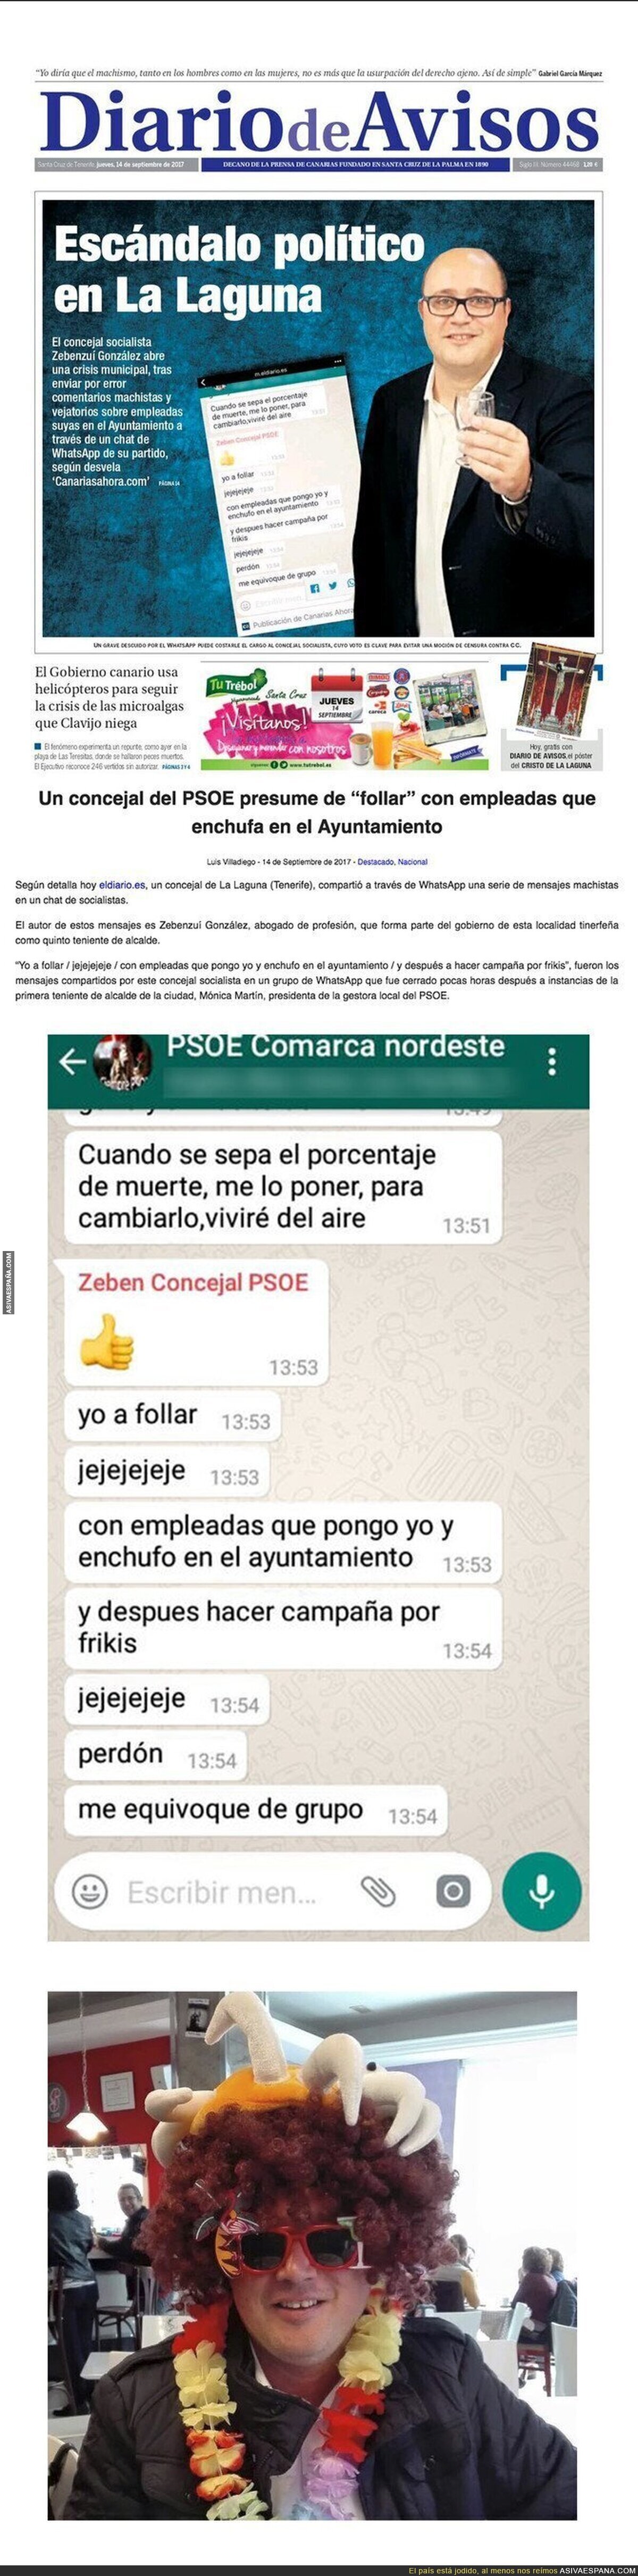 Filtran WhatsApps de un concejal del PSOE en los que dice follar y enchufar en el Ayuntamiento